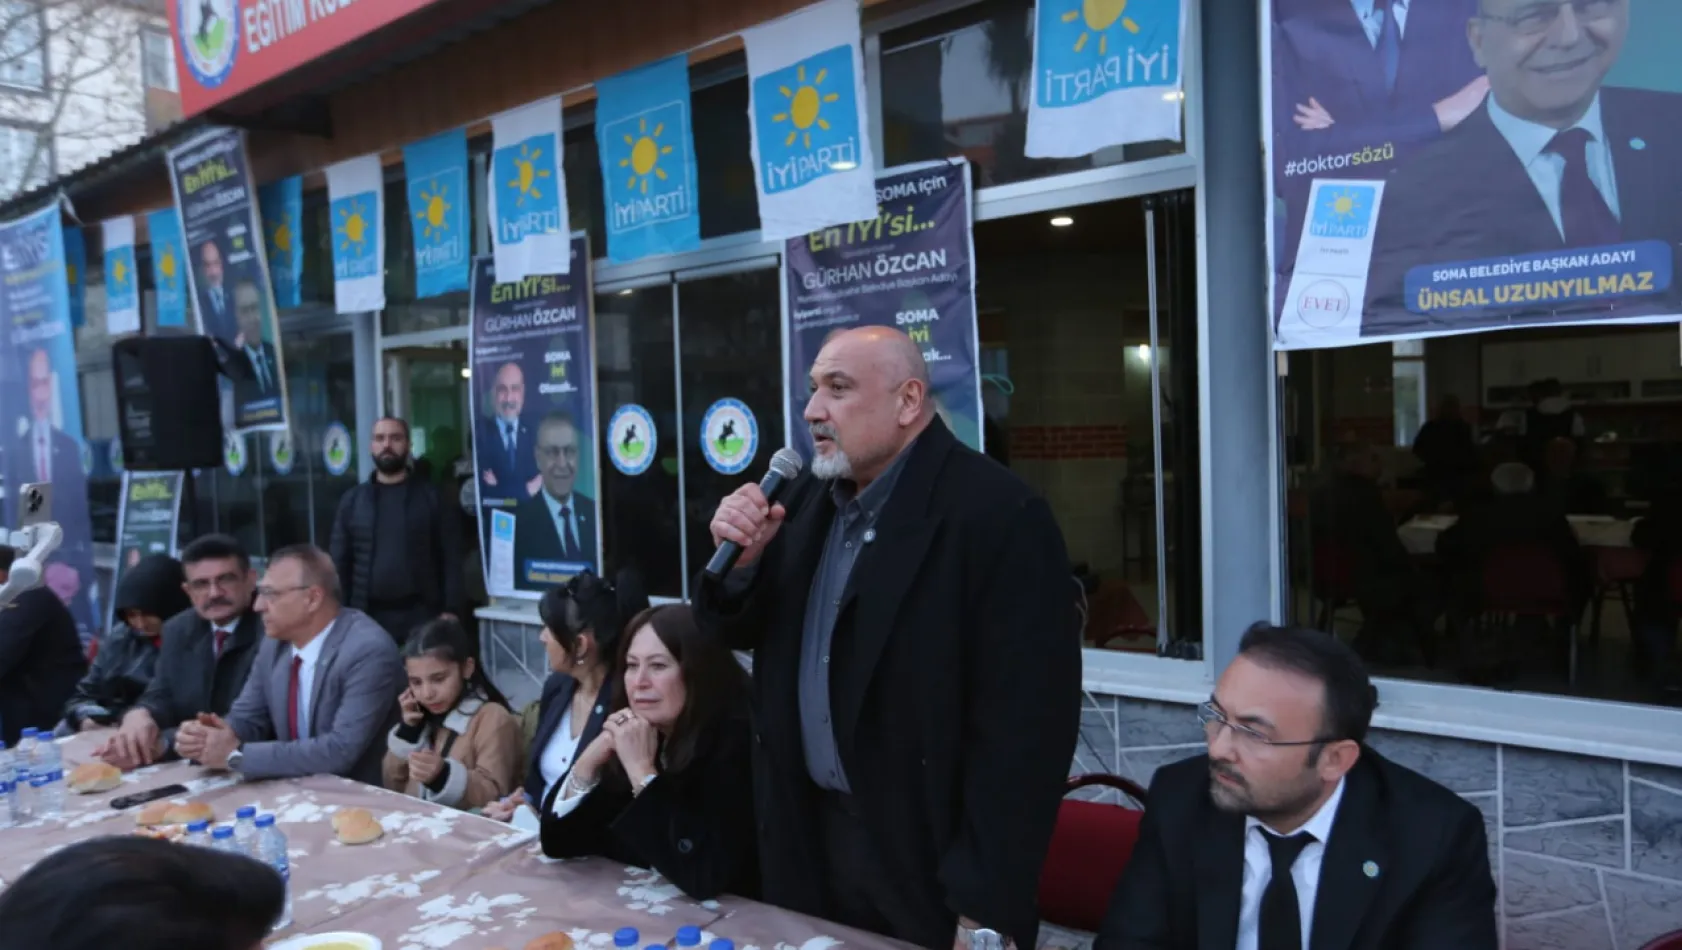 İYİ Partili Gürhan Özcan şehri karış karış geziyor 